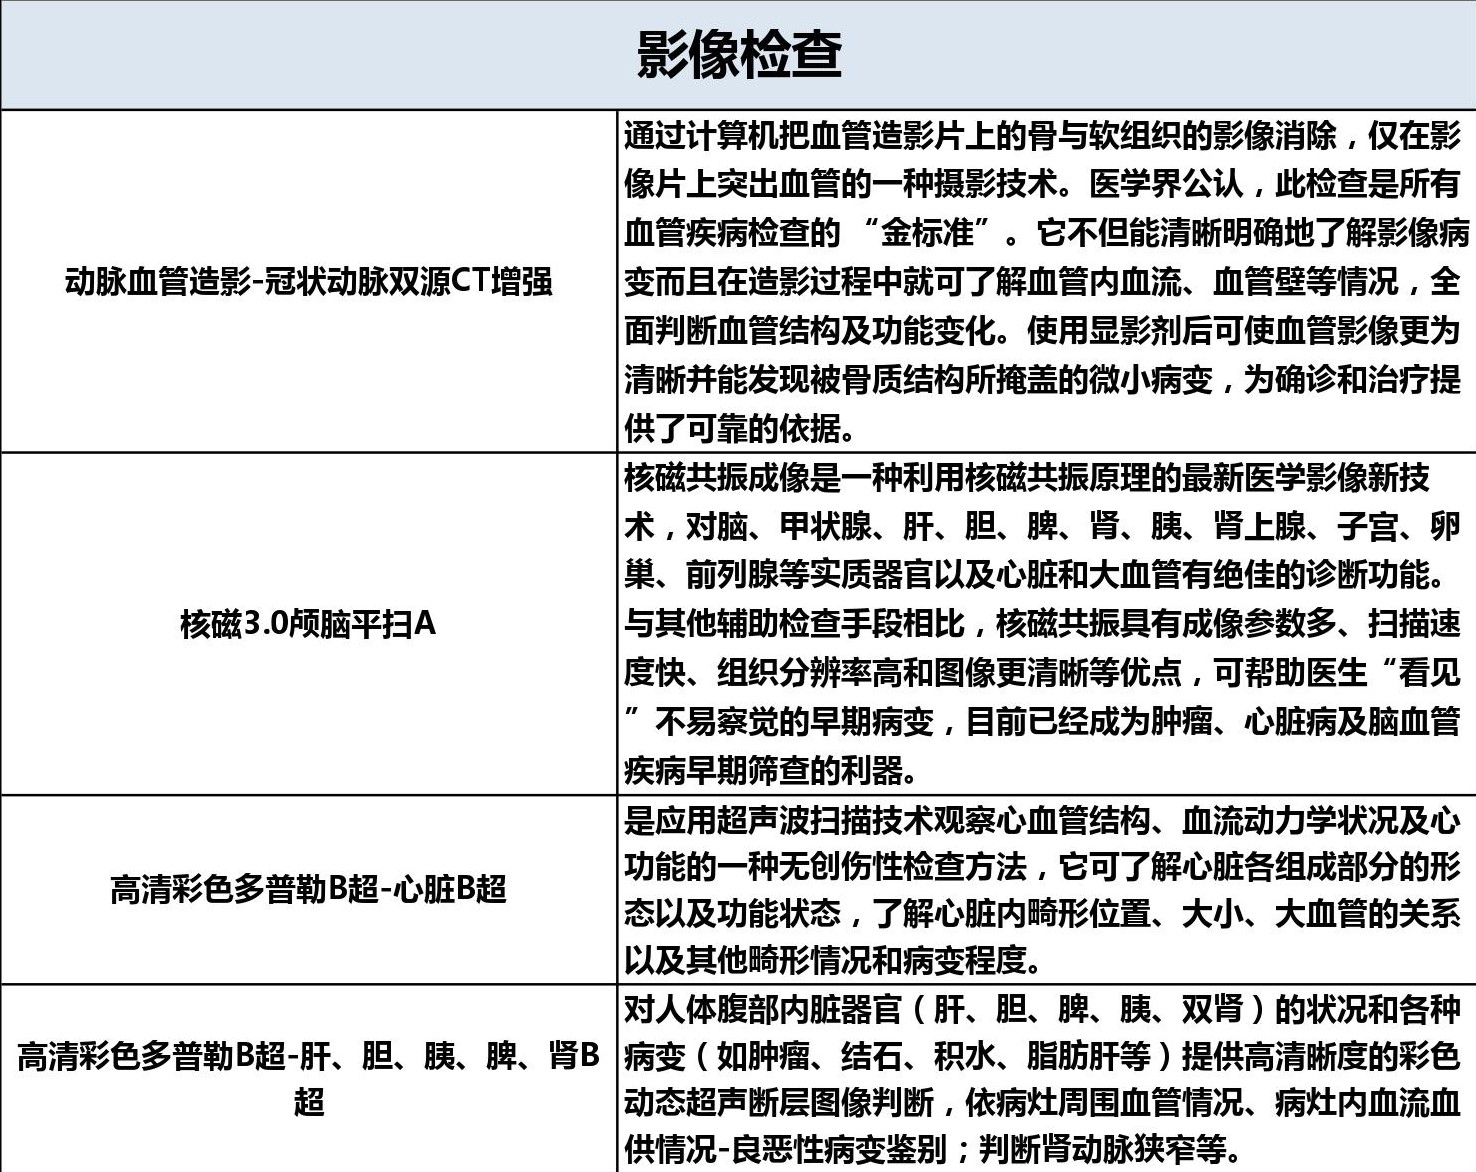 上海全景医学影像诊断中心心血管专项检查